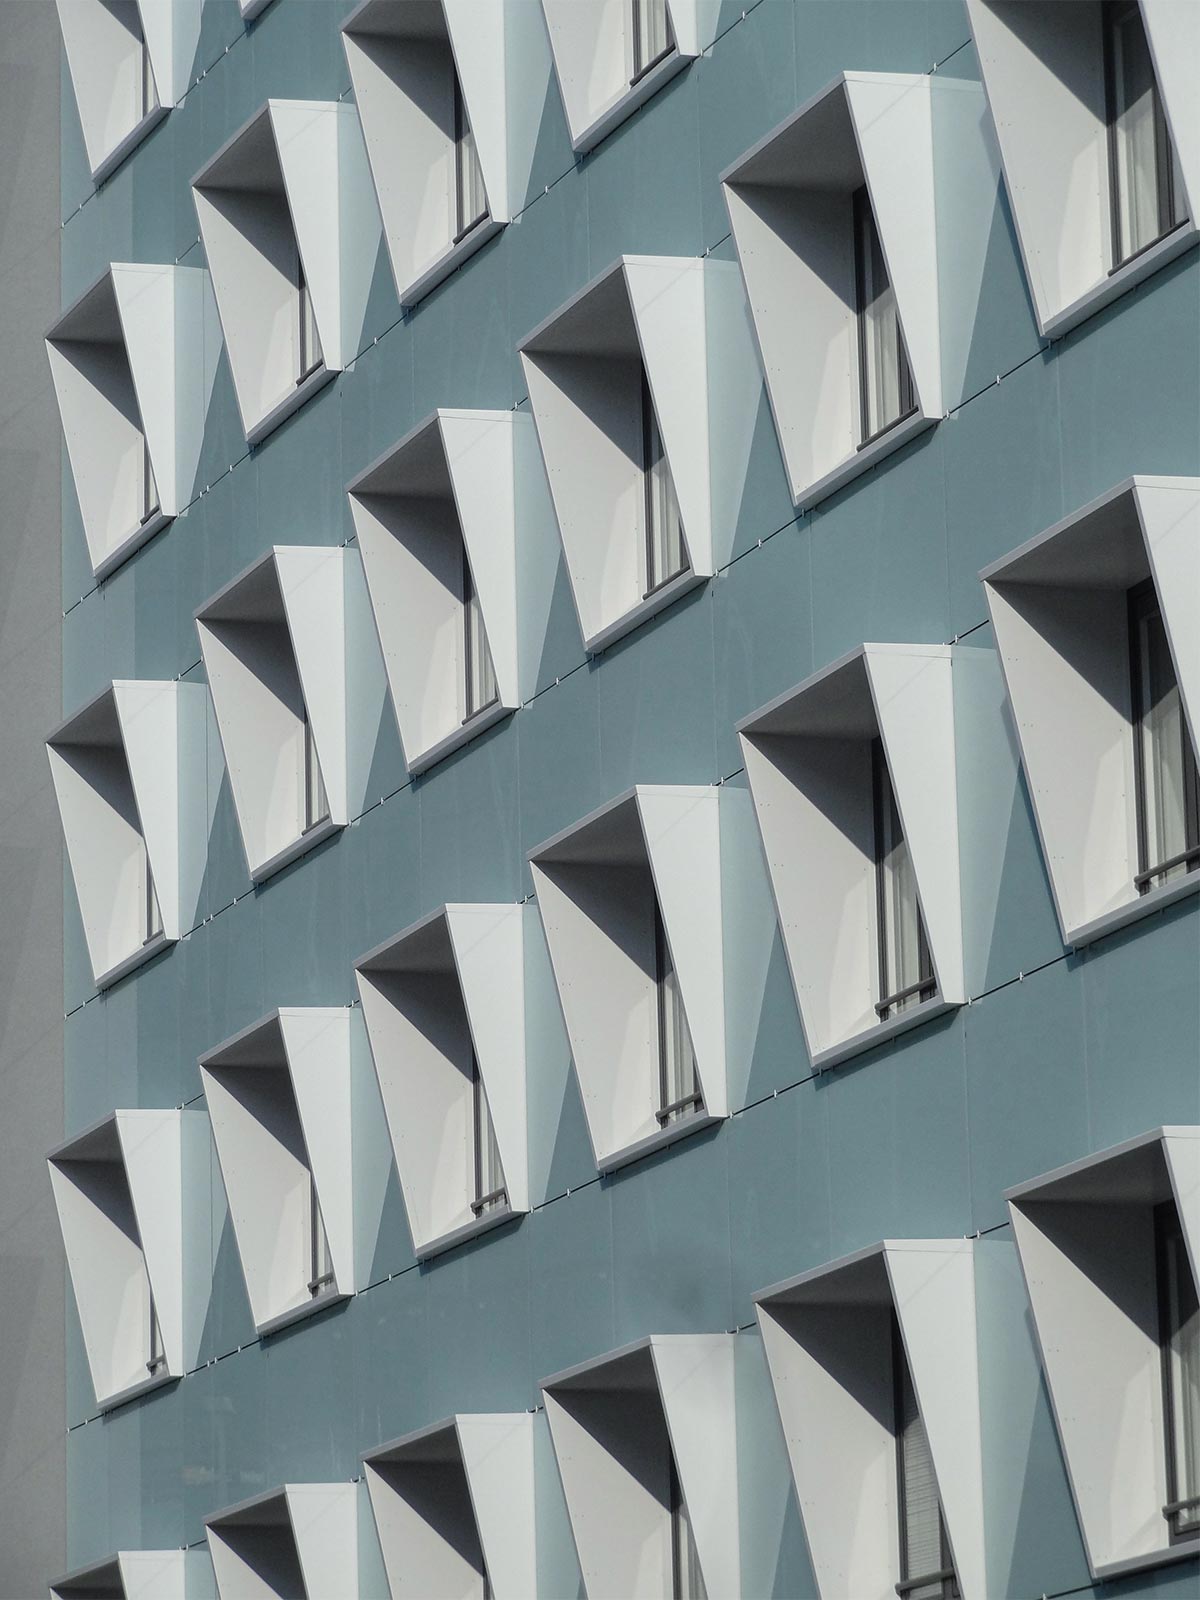 Architekturfotografie Frankfurt: Fensterreiche Fassade des DEVK-Bürogebäudes im Stadtteil Gallus